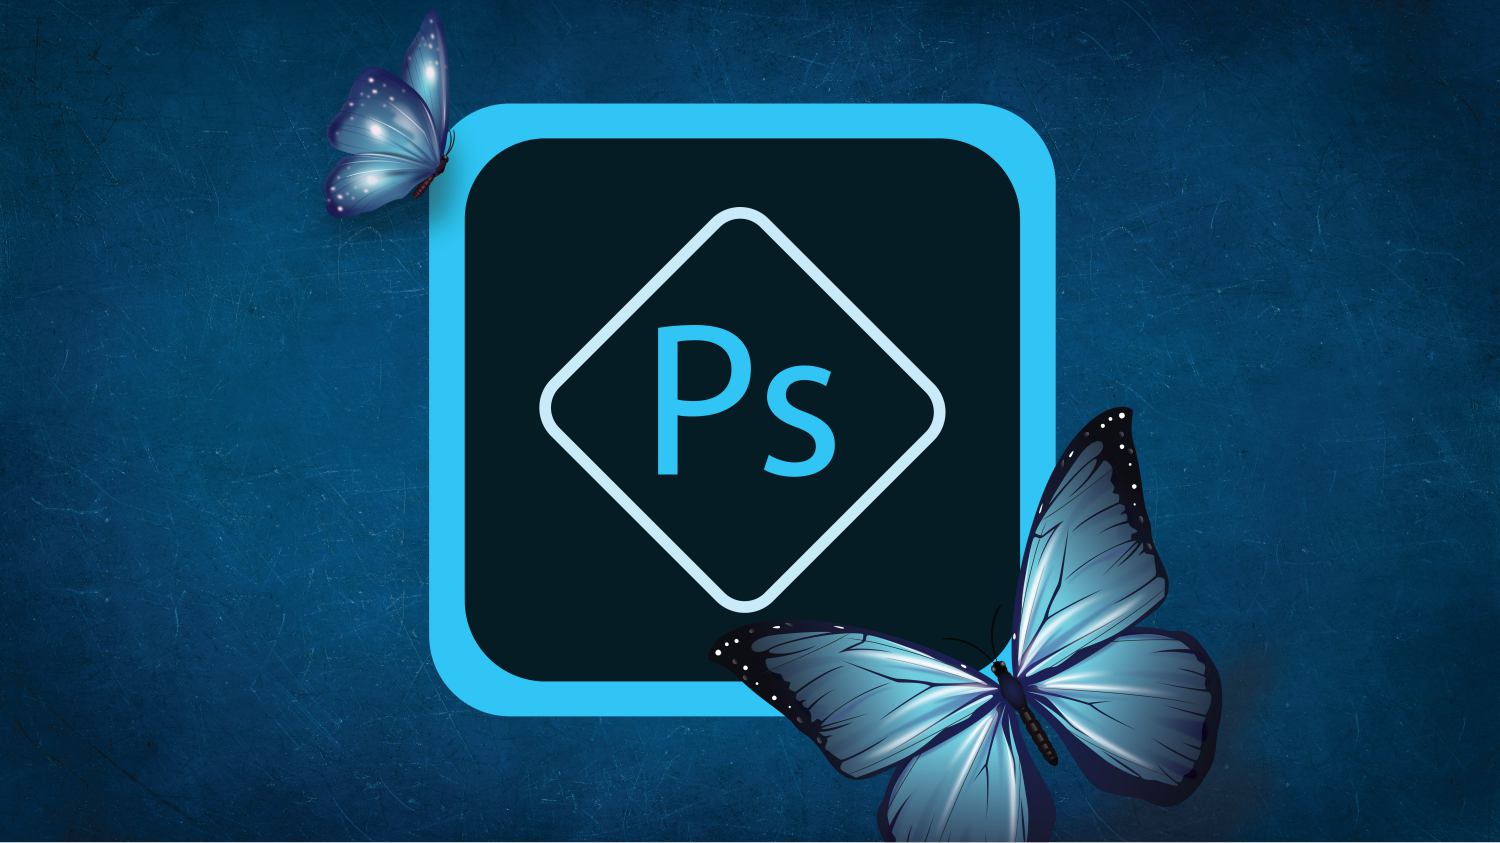 Adobe Uji Penawaran Photoshop Percuma Melalui Web